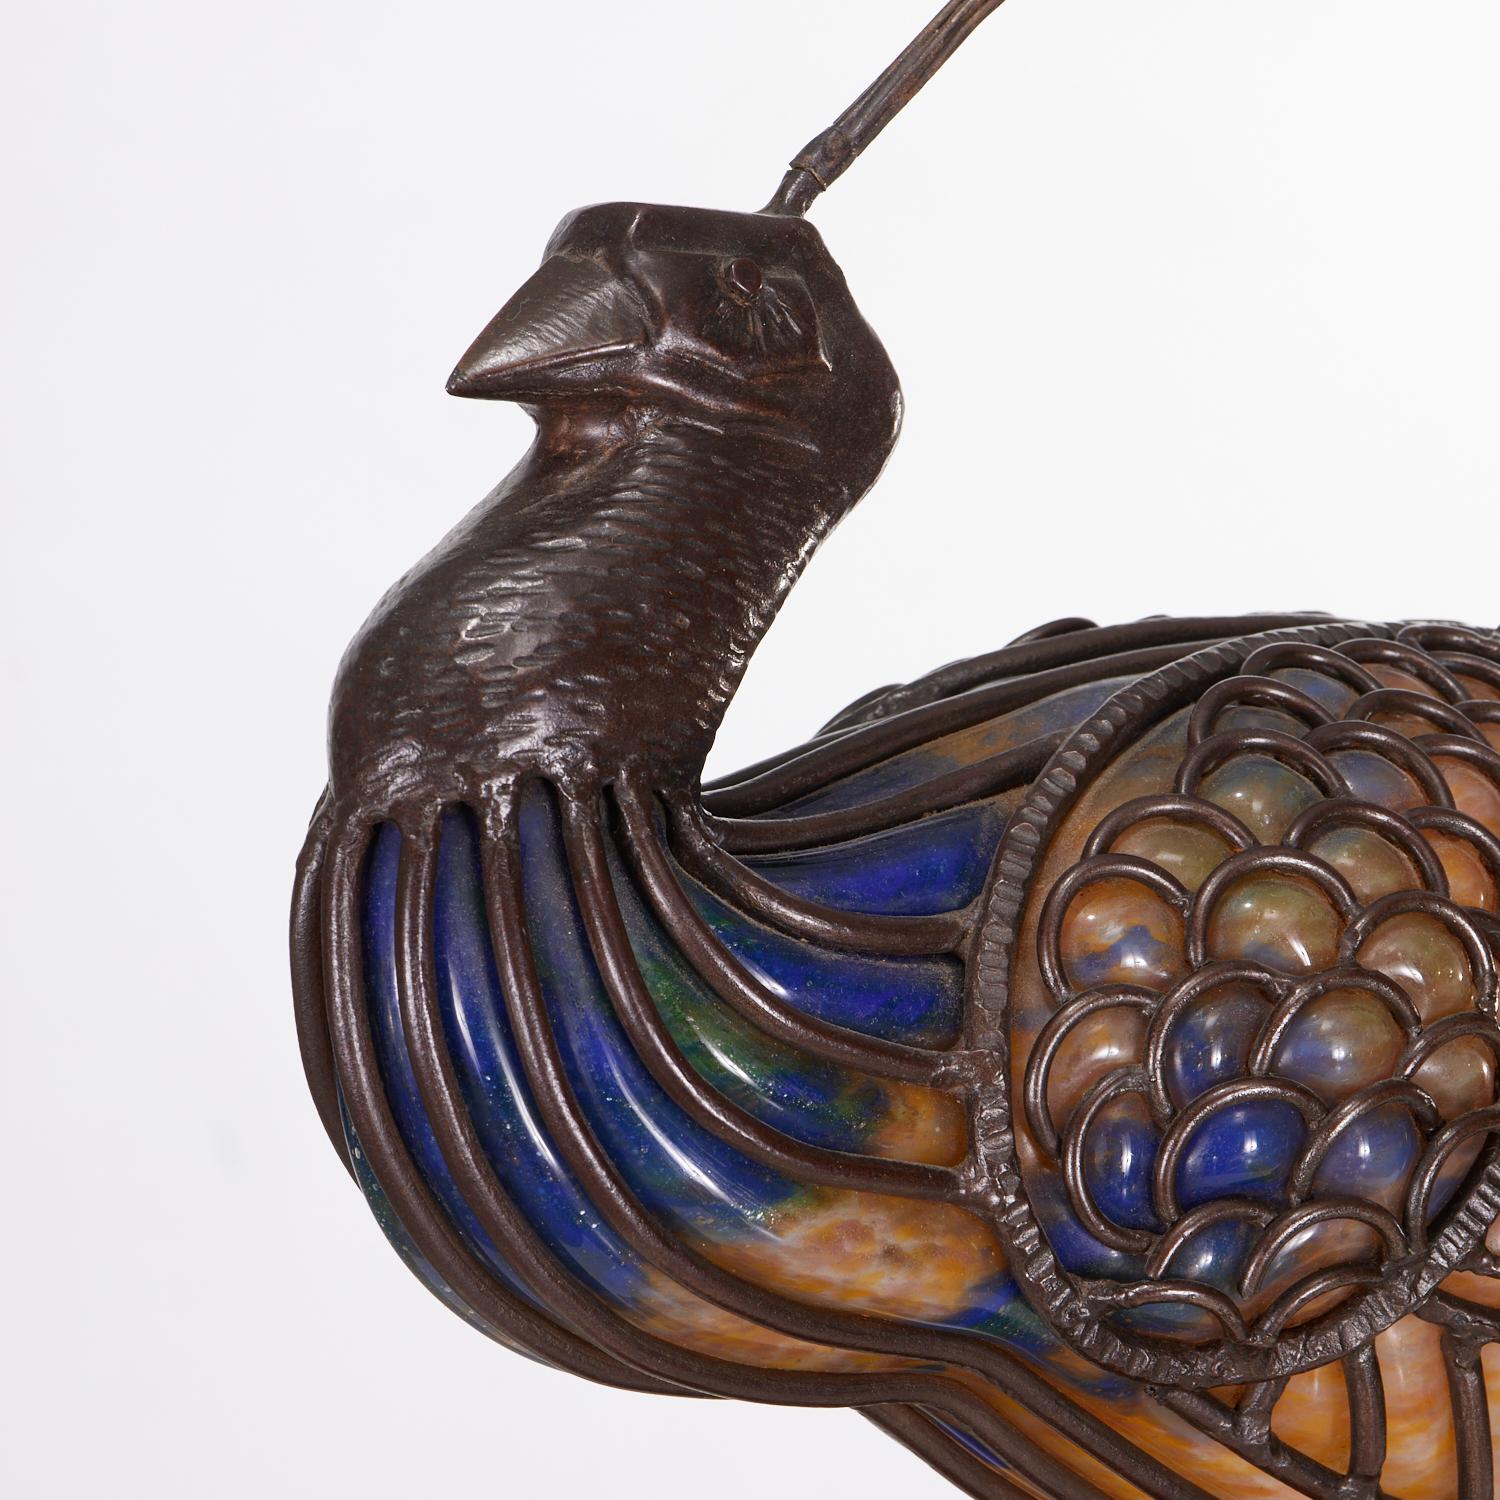 Rare lampe sculpturale en verre d'art et fer forgé de Muller-Frères, représentant un oiseau paon. Cette lampe sculpturale est finement travaillée avec un oiseau sculpté en fer forgé martelé patiné brun, inséré dans un verre soufflé 